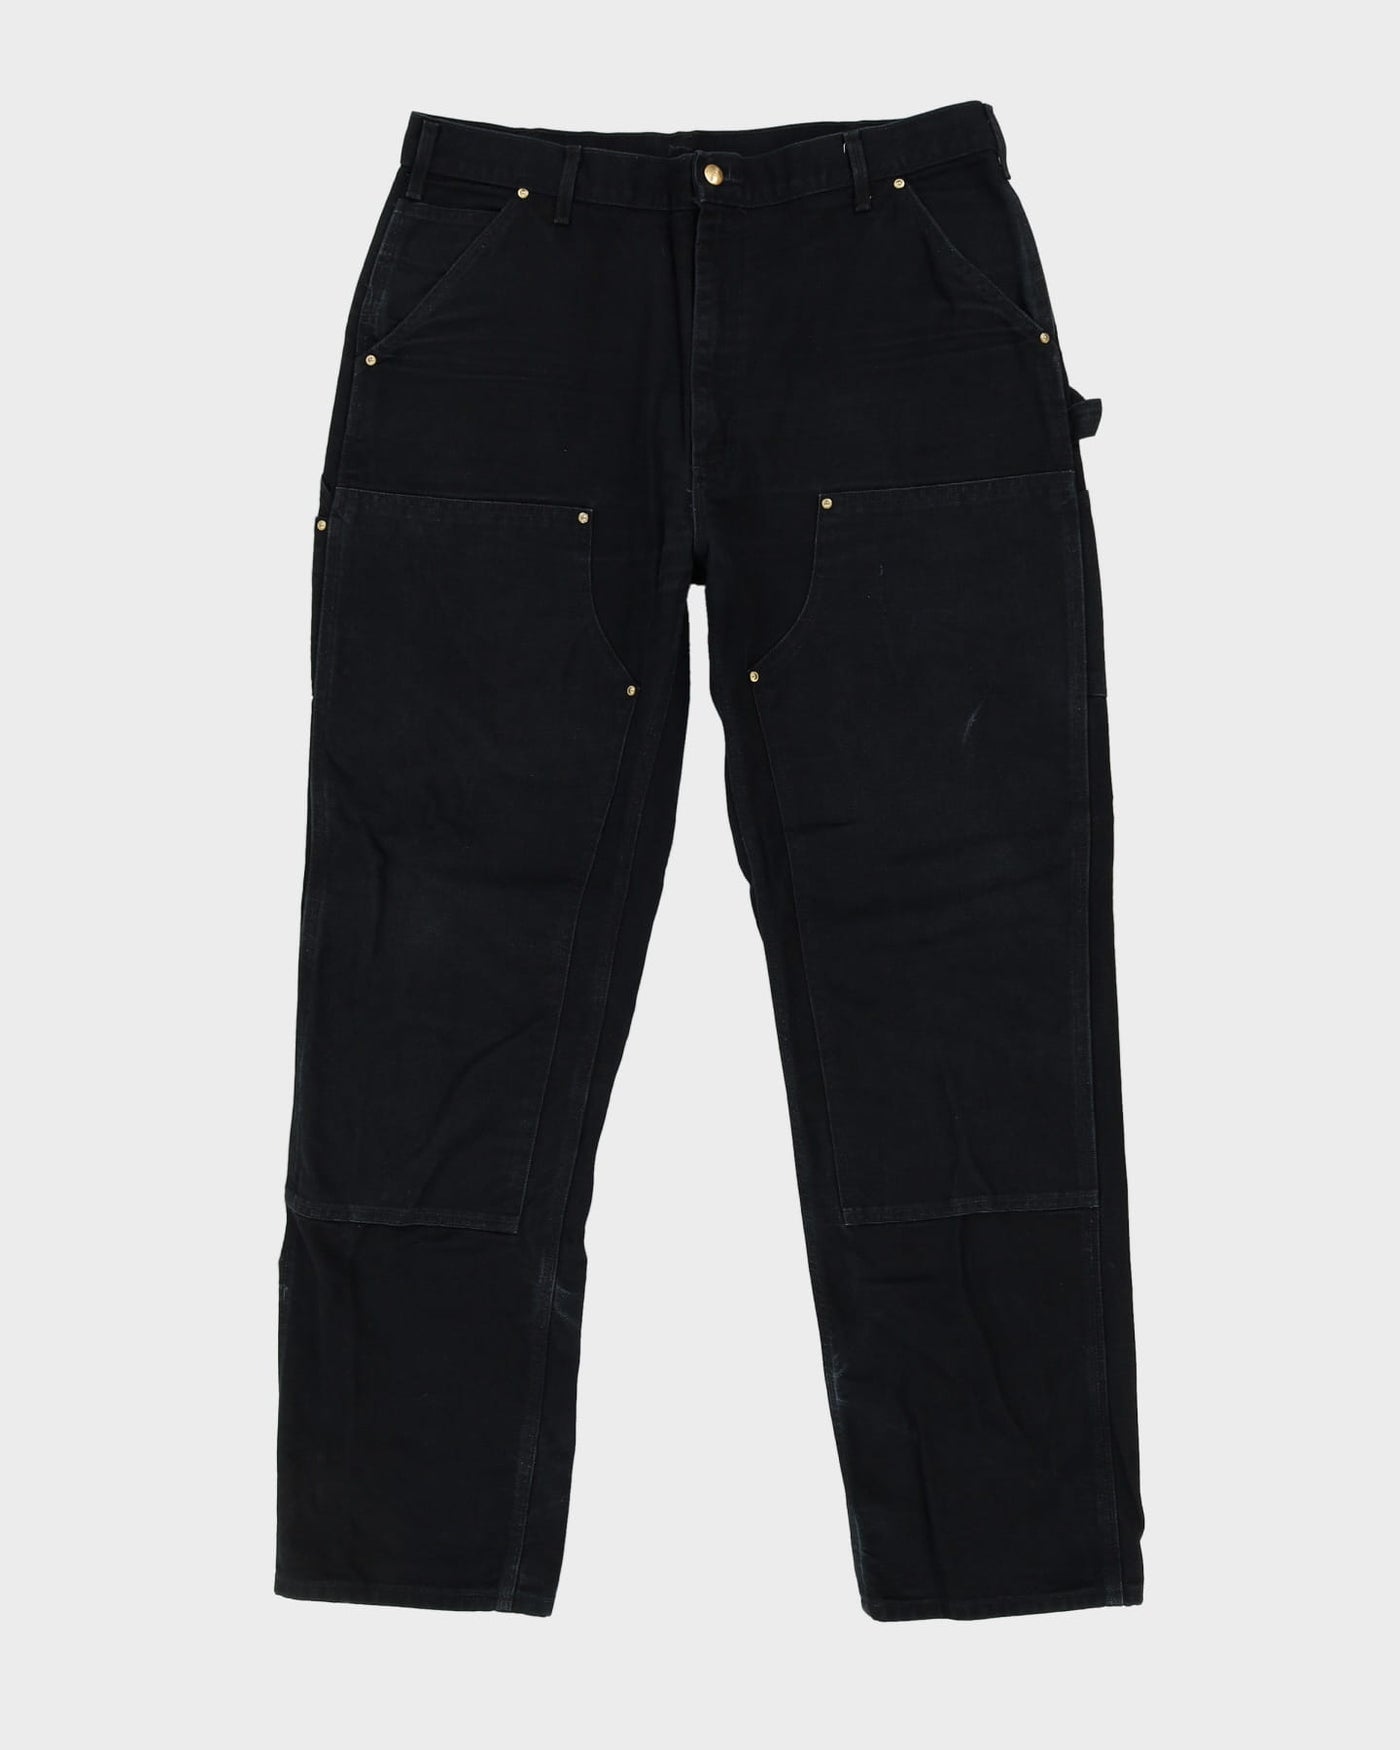 Vintage 90s Carhartt Black Double Knee Workwear Jeans - W38 L34